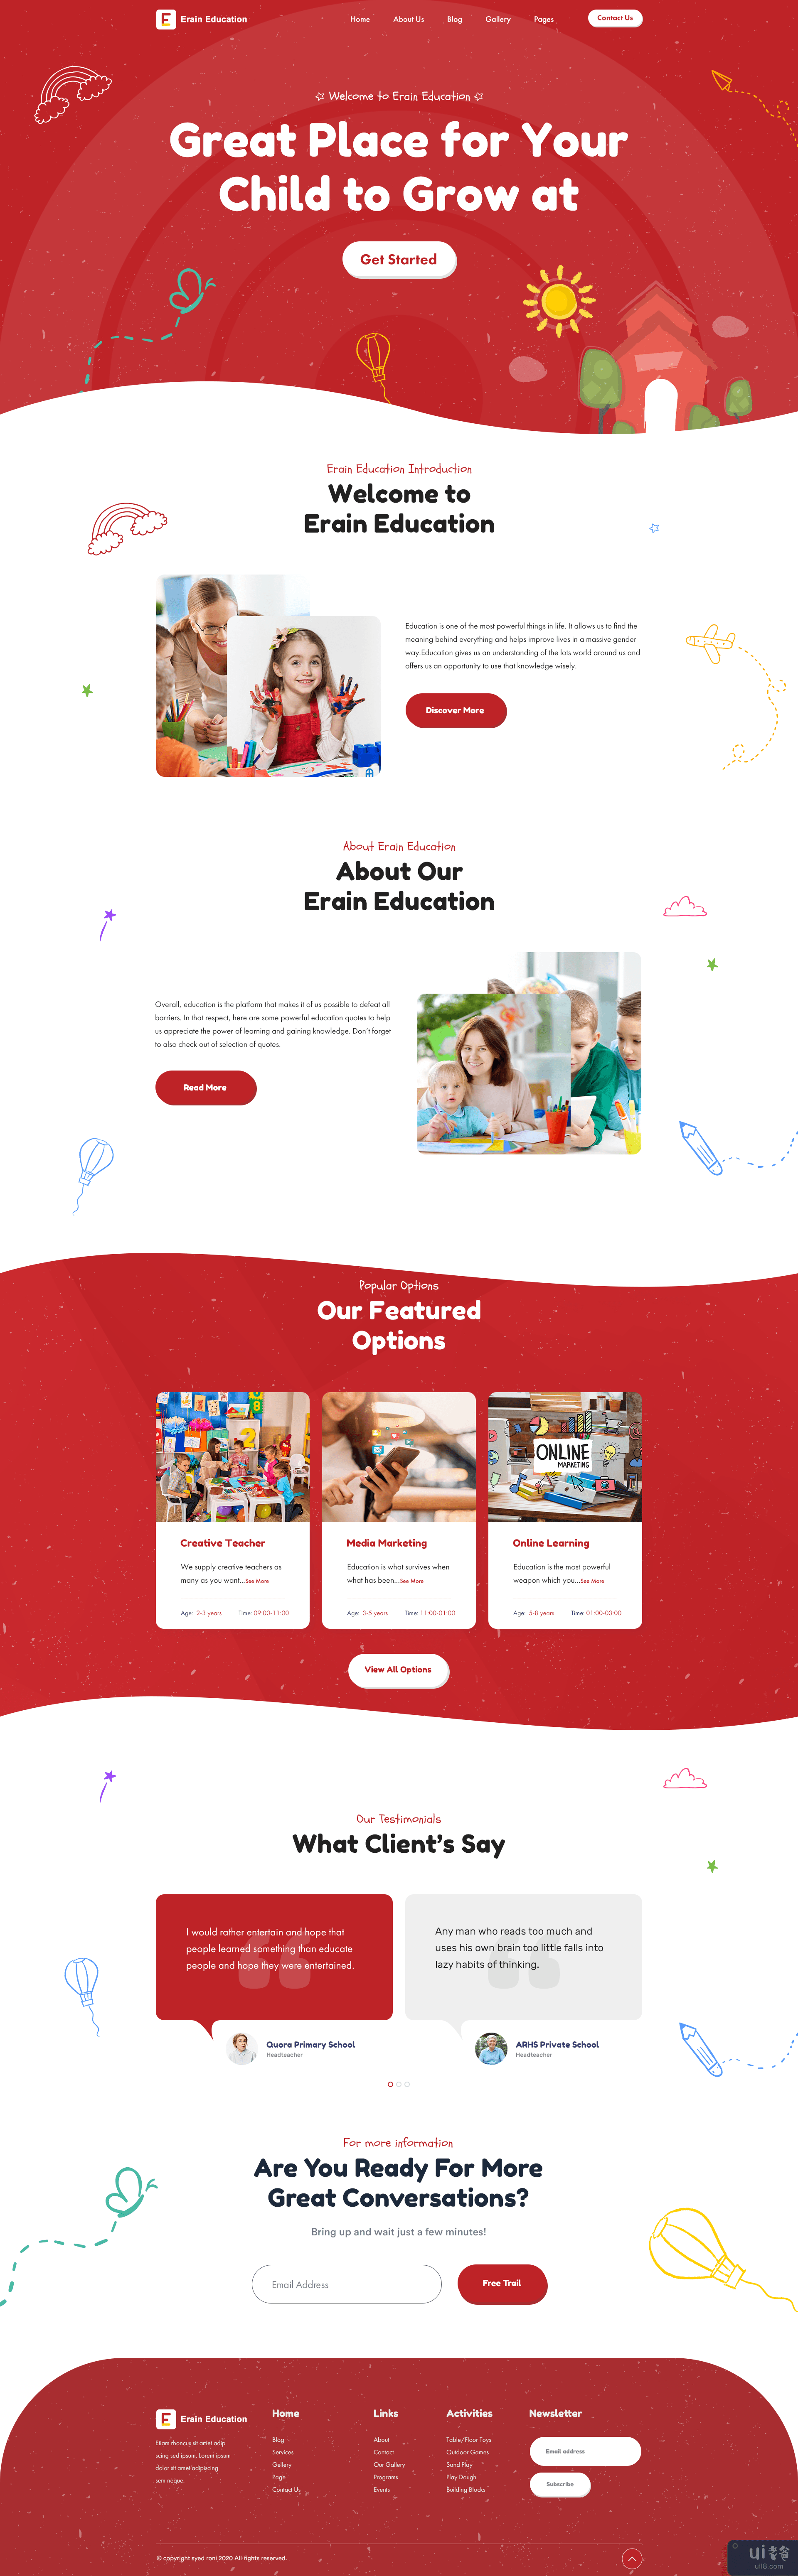 Fleek 教育登陆页面(Fleek Education landing page)插图